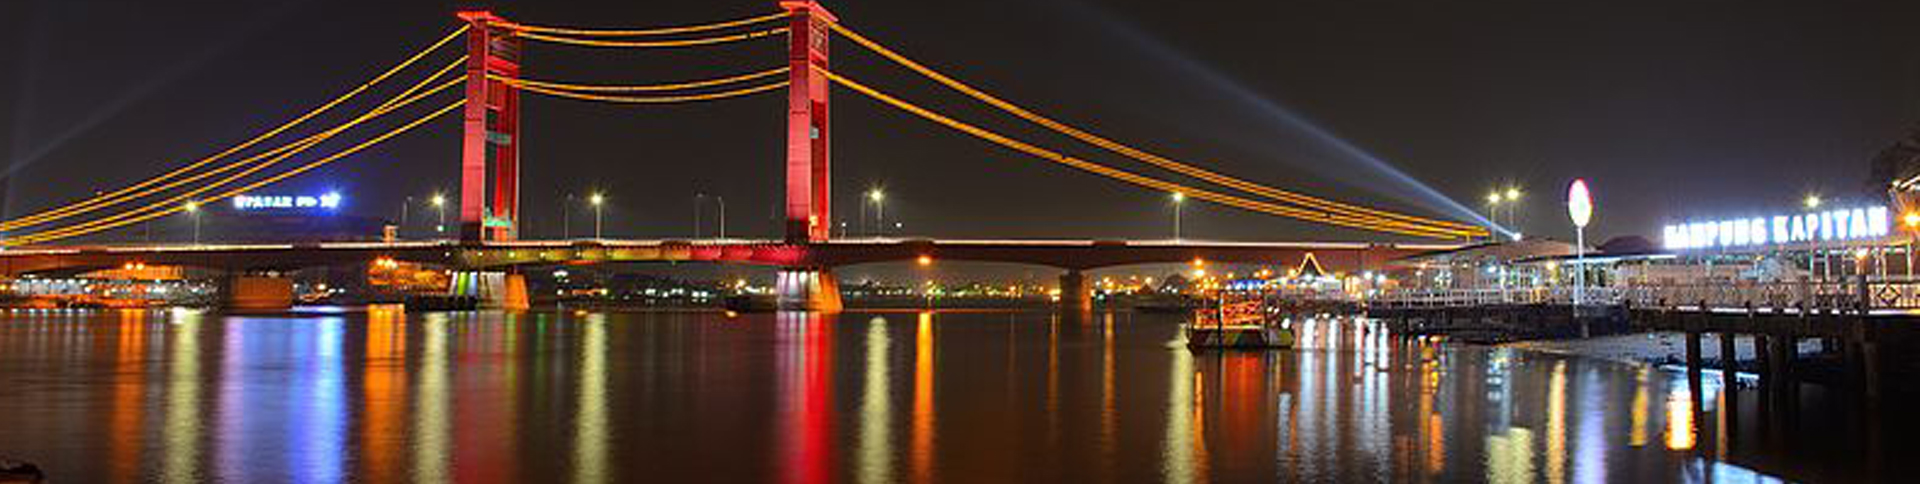 10 Jembatan Ternama di Indonesia